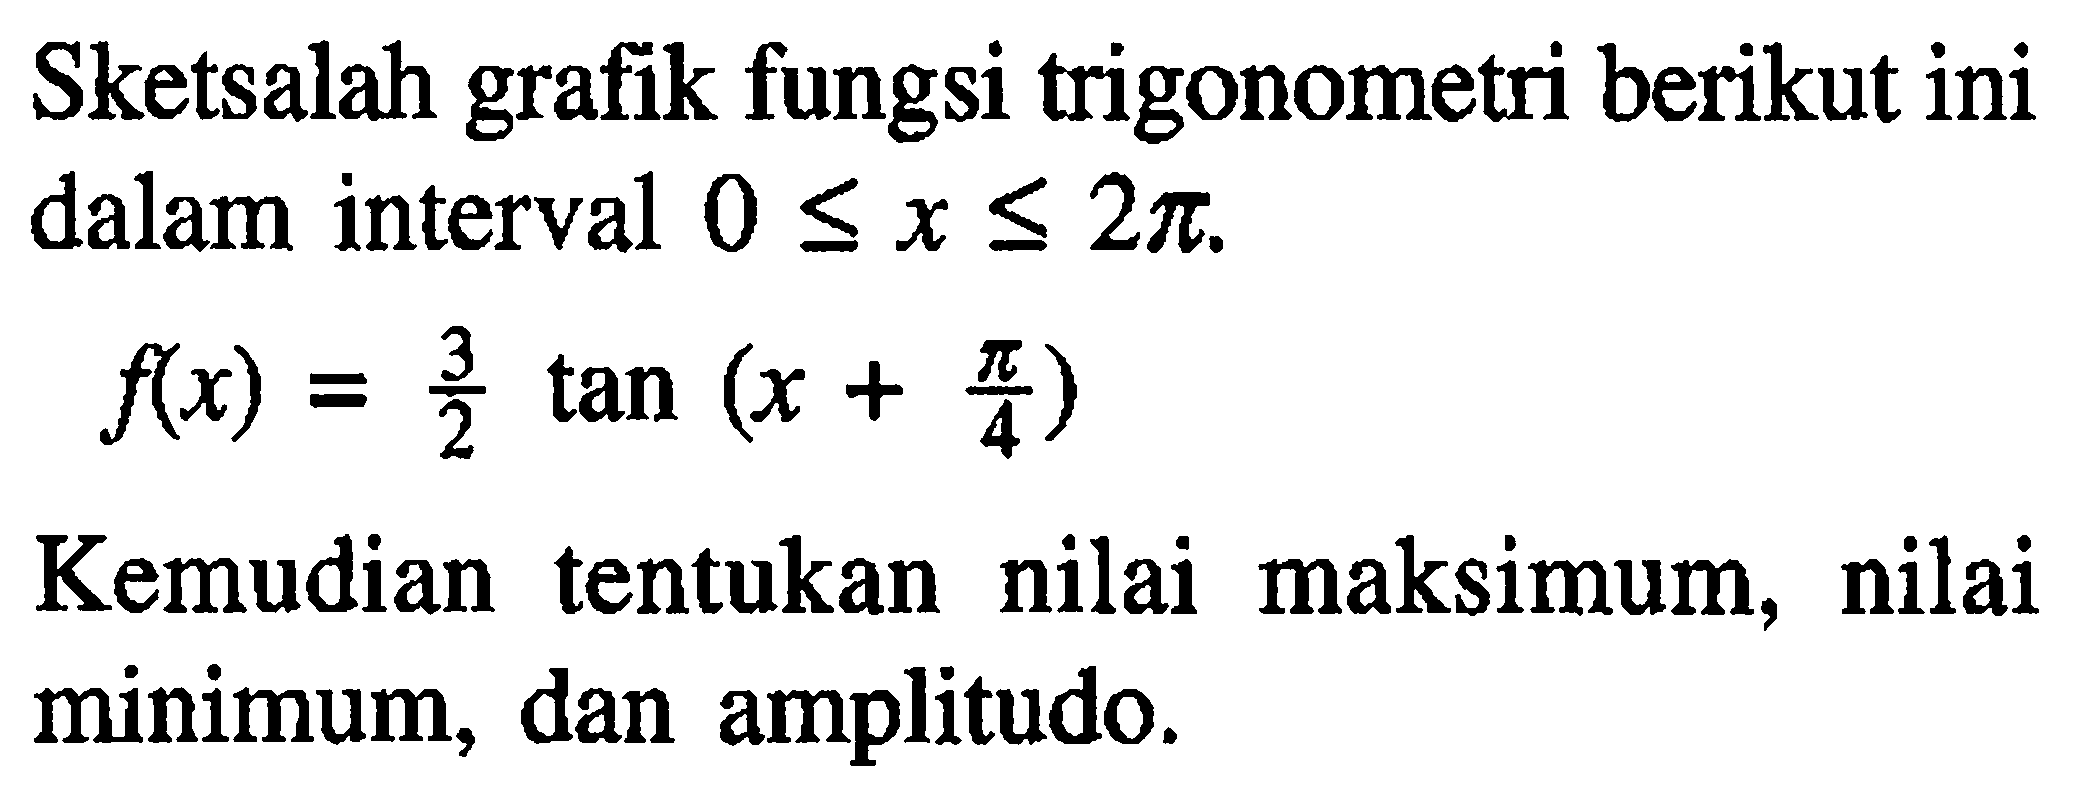 Sketsalah grafik fungsi trigonometri berikut ini dalam interval 0<=x<=2pi. f(x) = 3/2 tan(x+pi/4) Kemudian tentukan nilai maksimum, nilai minimum, dan amplitudo.